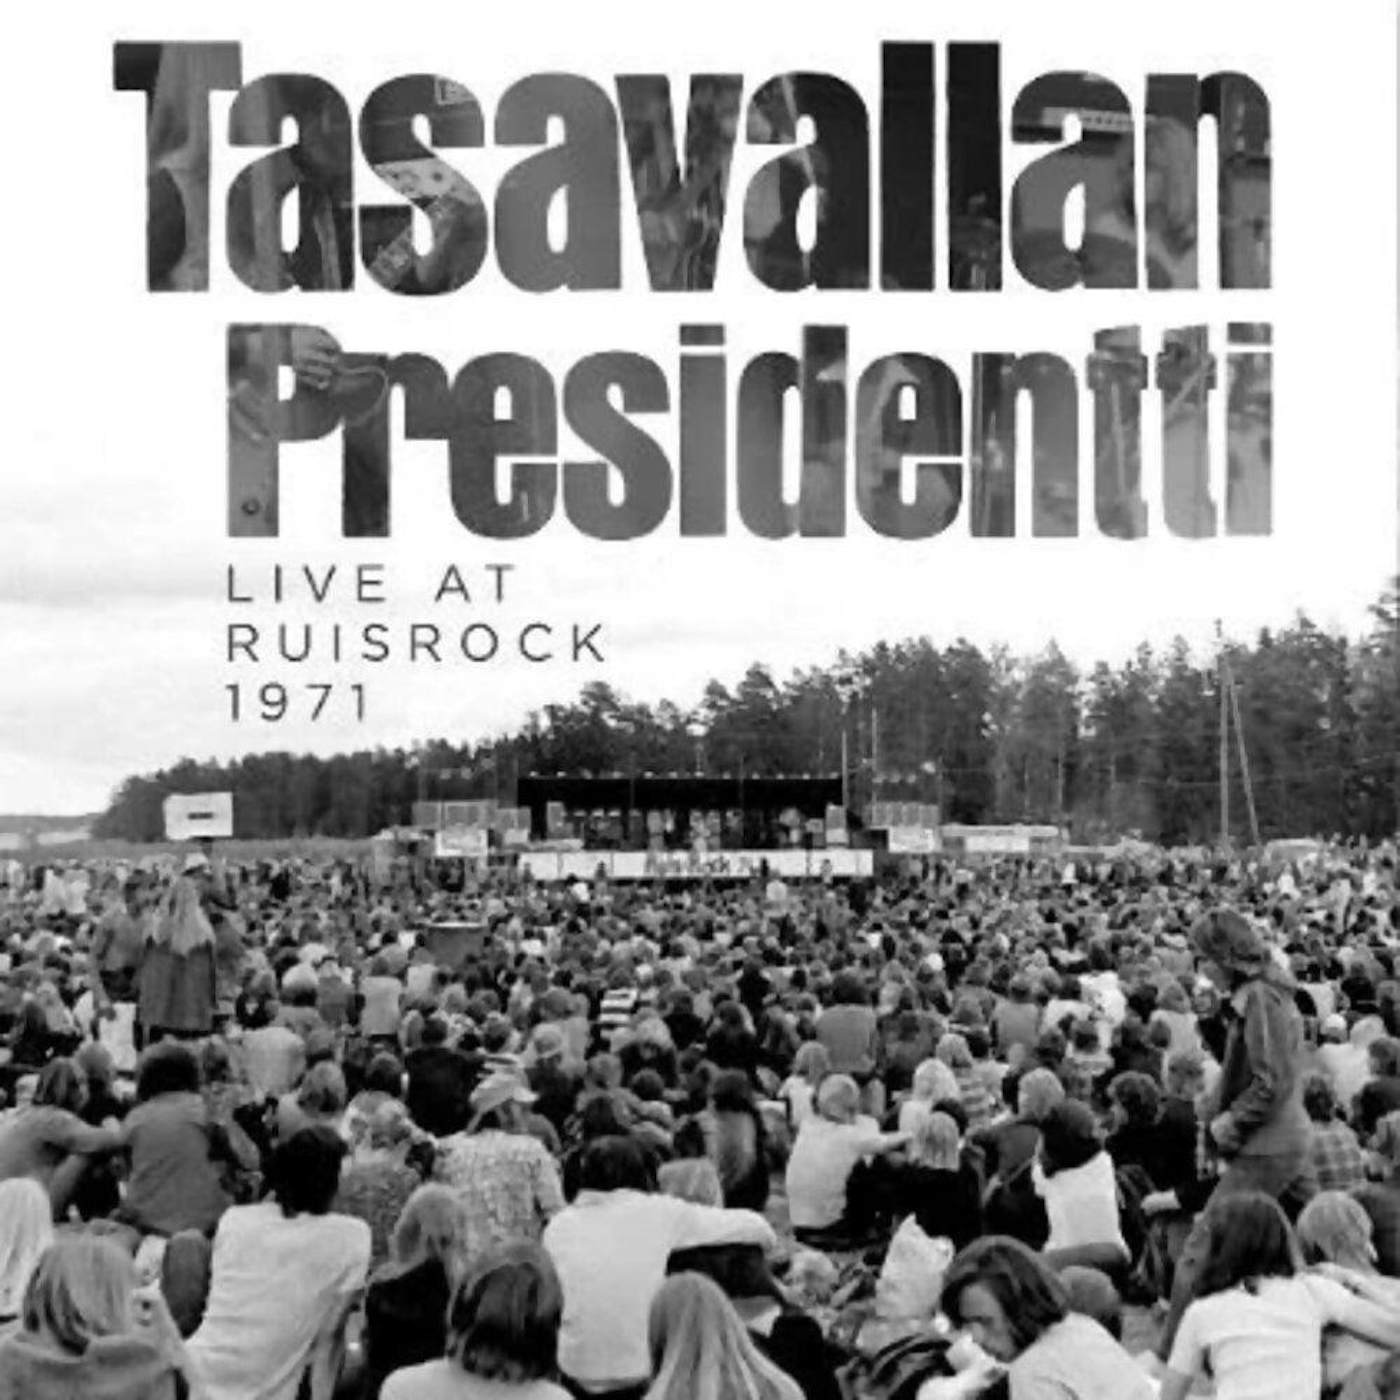 Tasavallan Presidentti Live At Ruisrock 1971 Vinyl Record